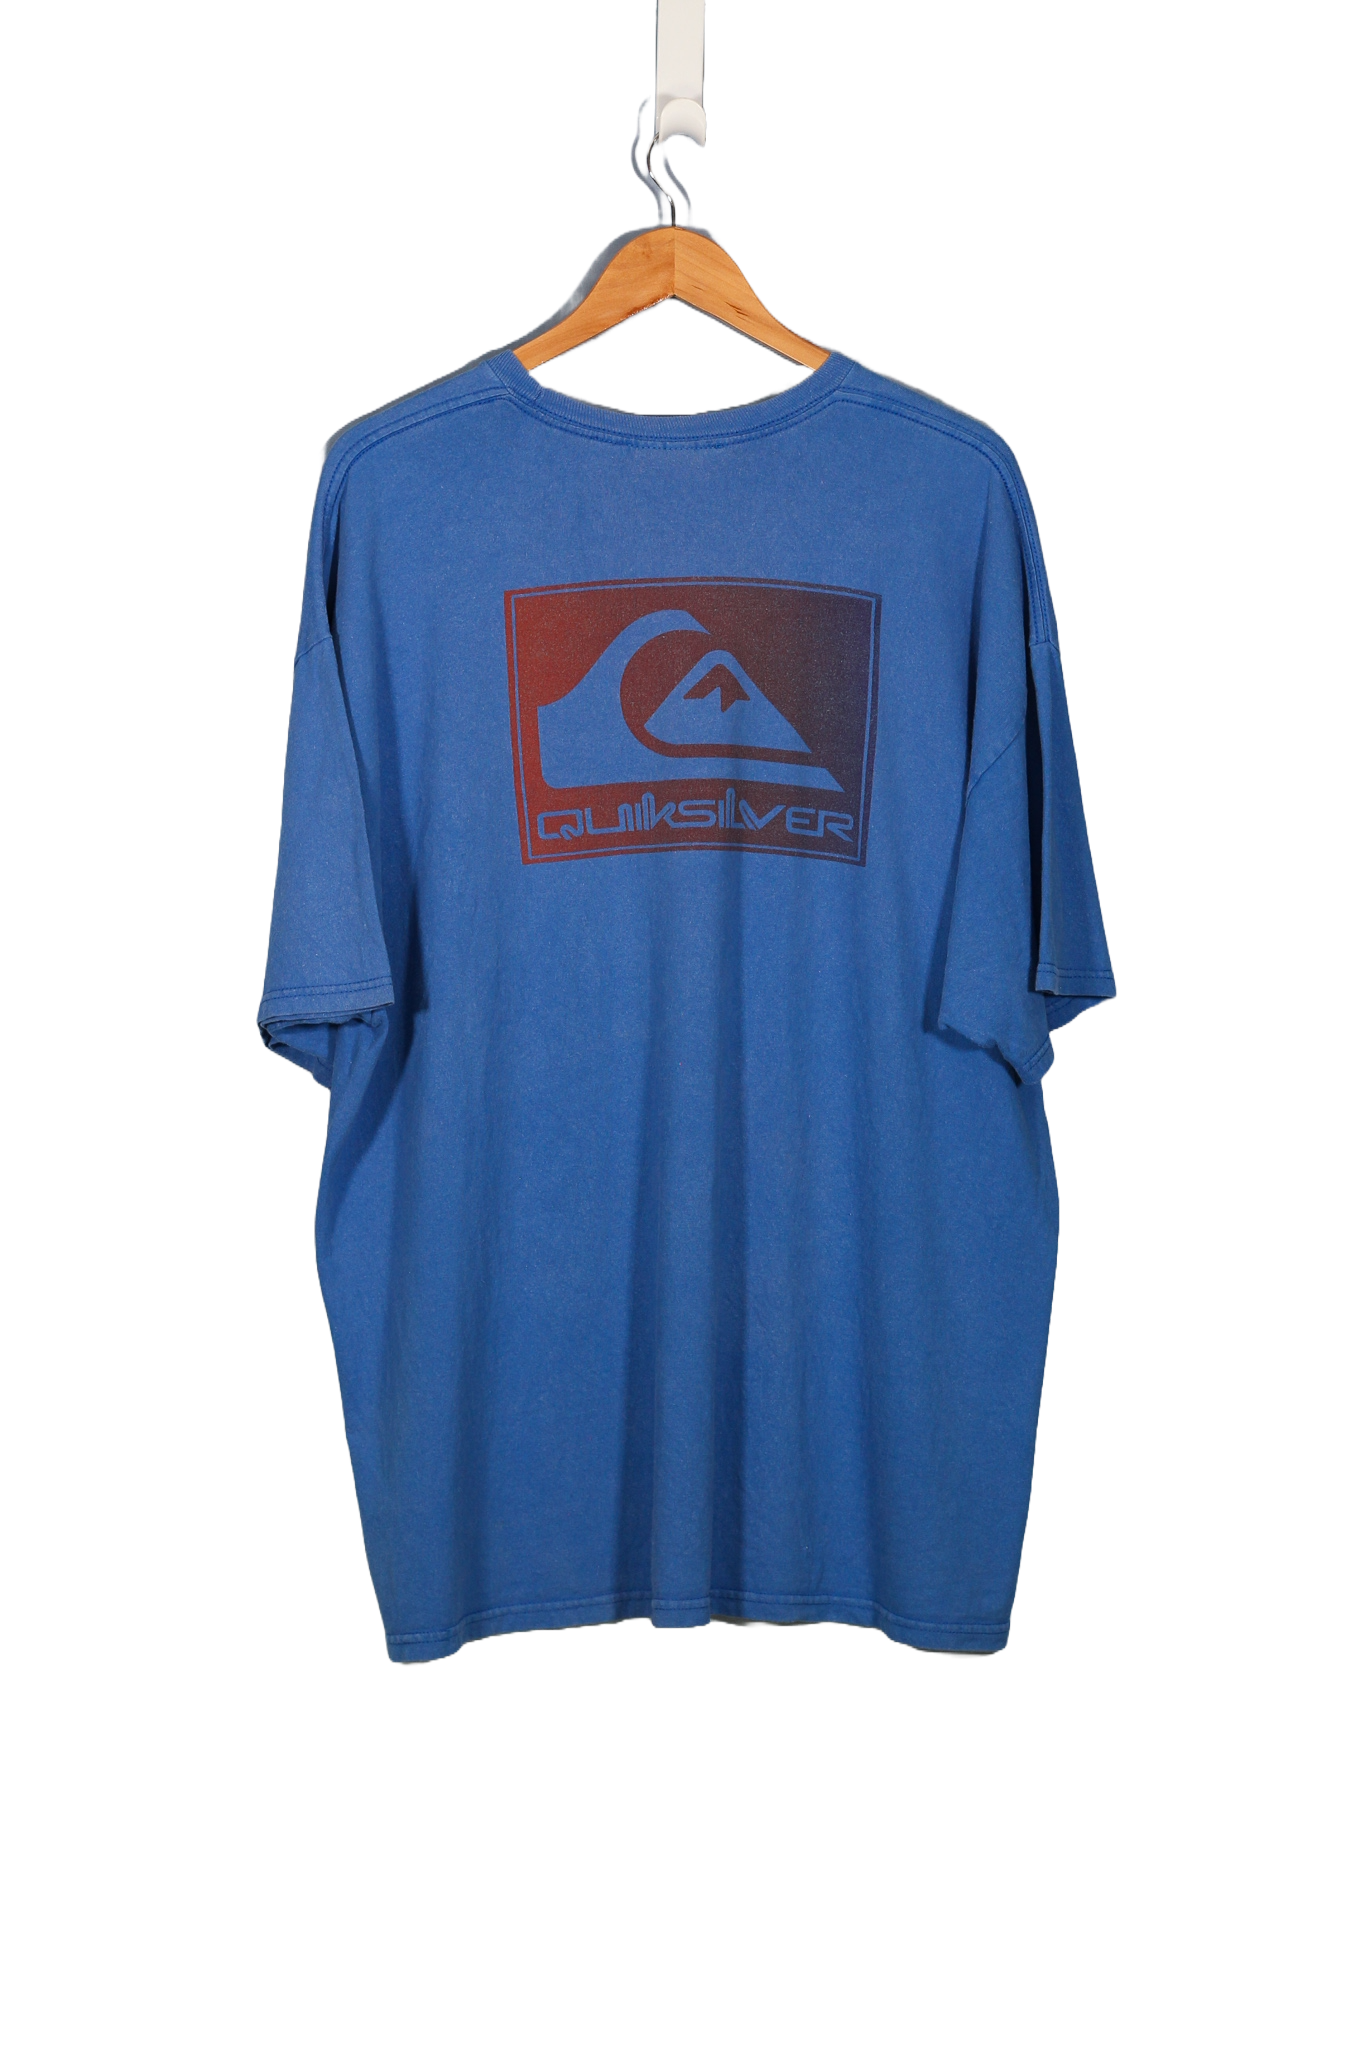 Vintage Quiksilver Blue Surf T-Shirt - XXL